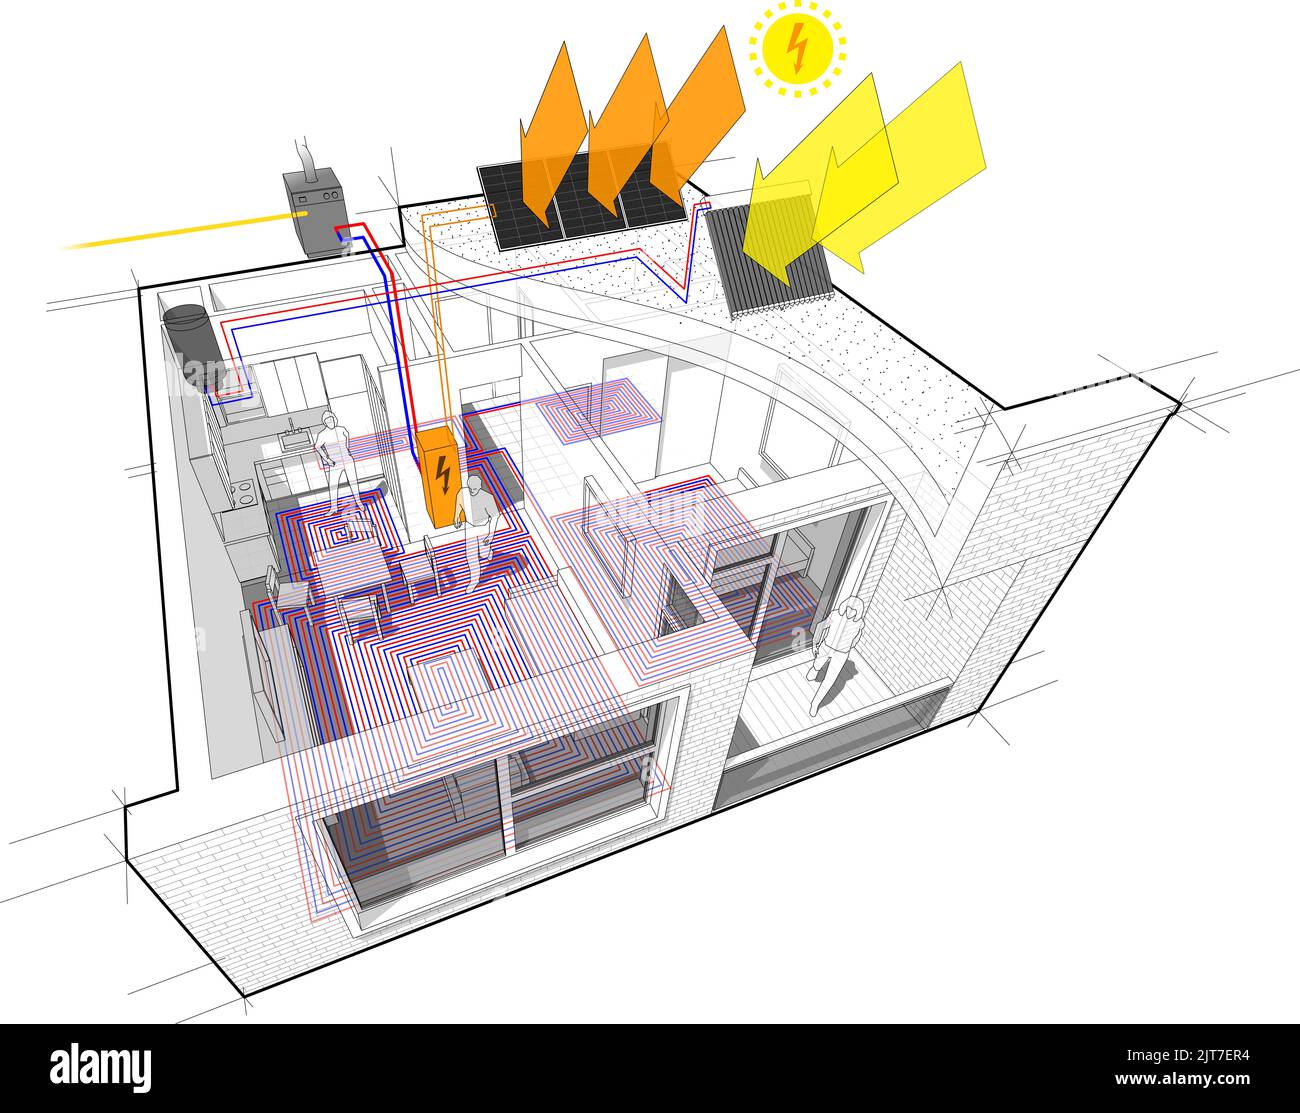 Schema dell'appartamento con riscaldamento a pavimento e caldaia a gas e pannelli fotovoltaici e solari Foto Stock